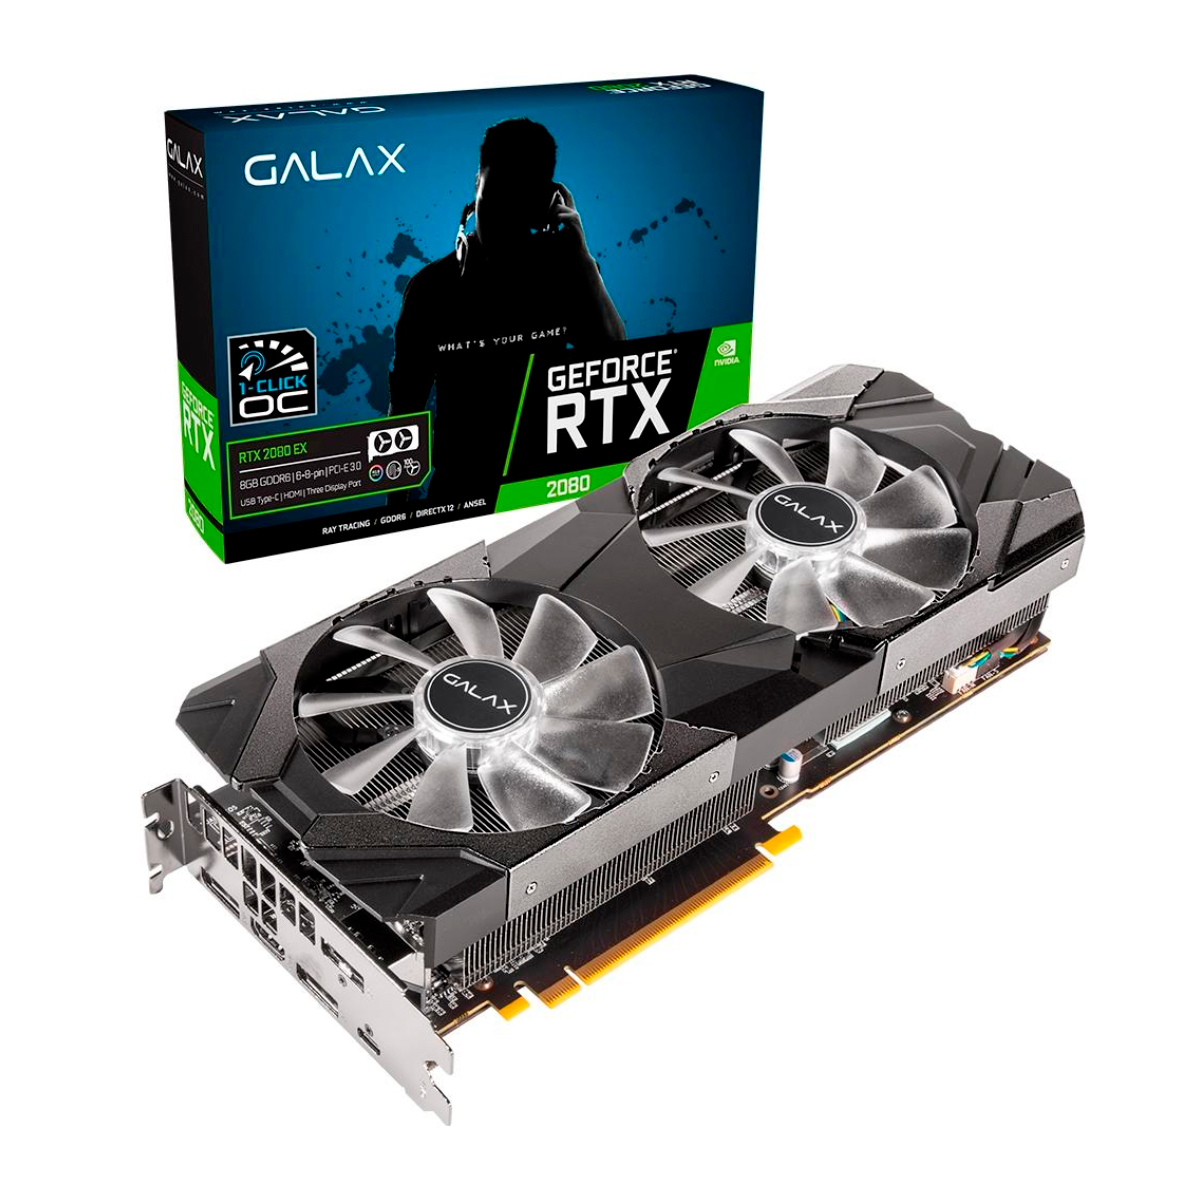 GeForce RTX 2080 8GB GDDR6 256bits - 1-Click OC - Galax EX 28NSL6UCU9EN